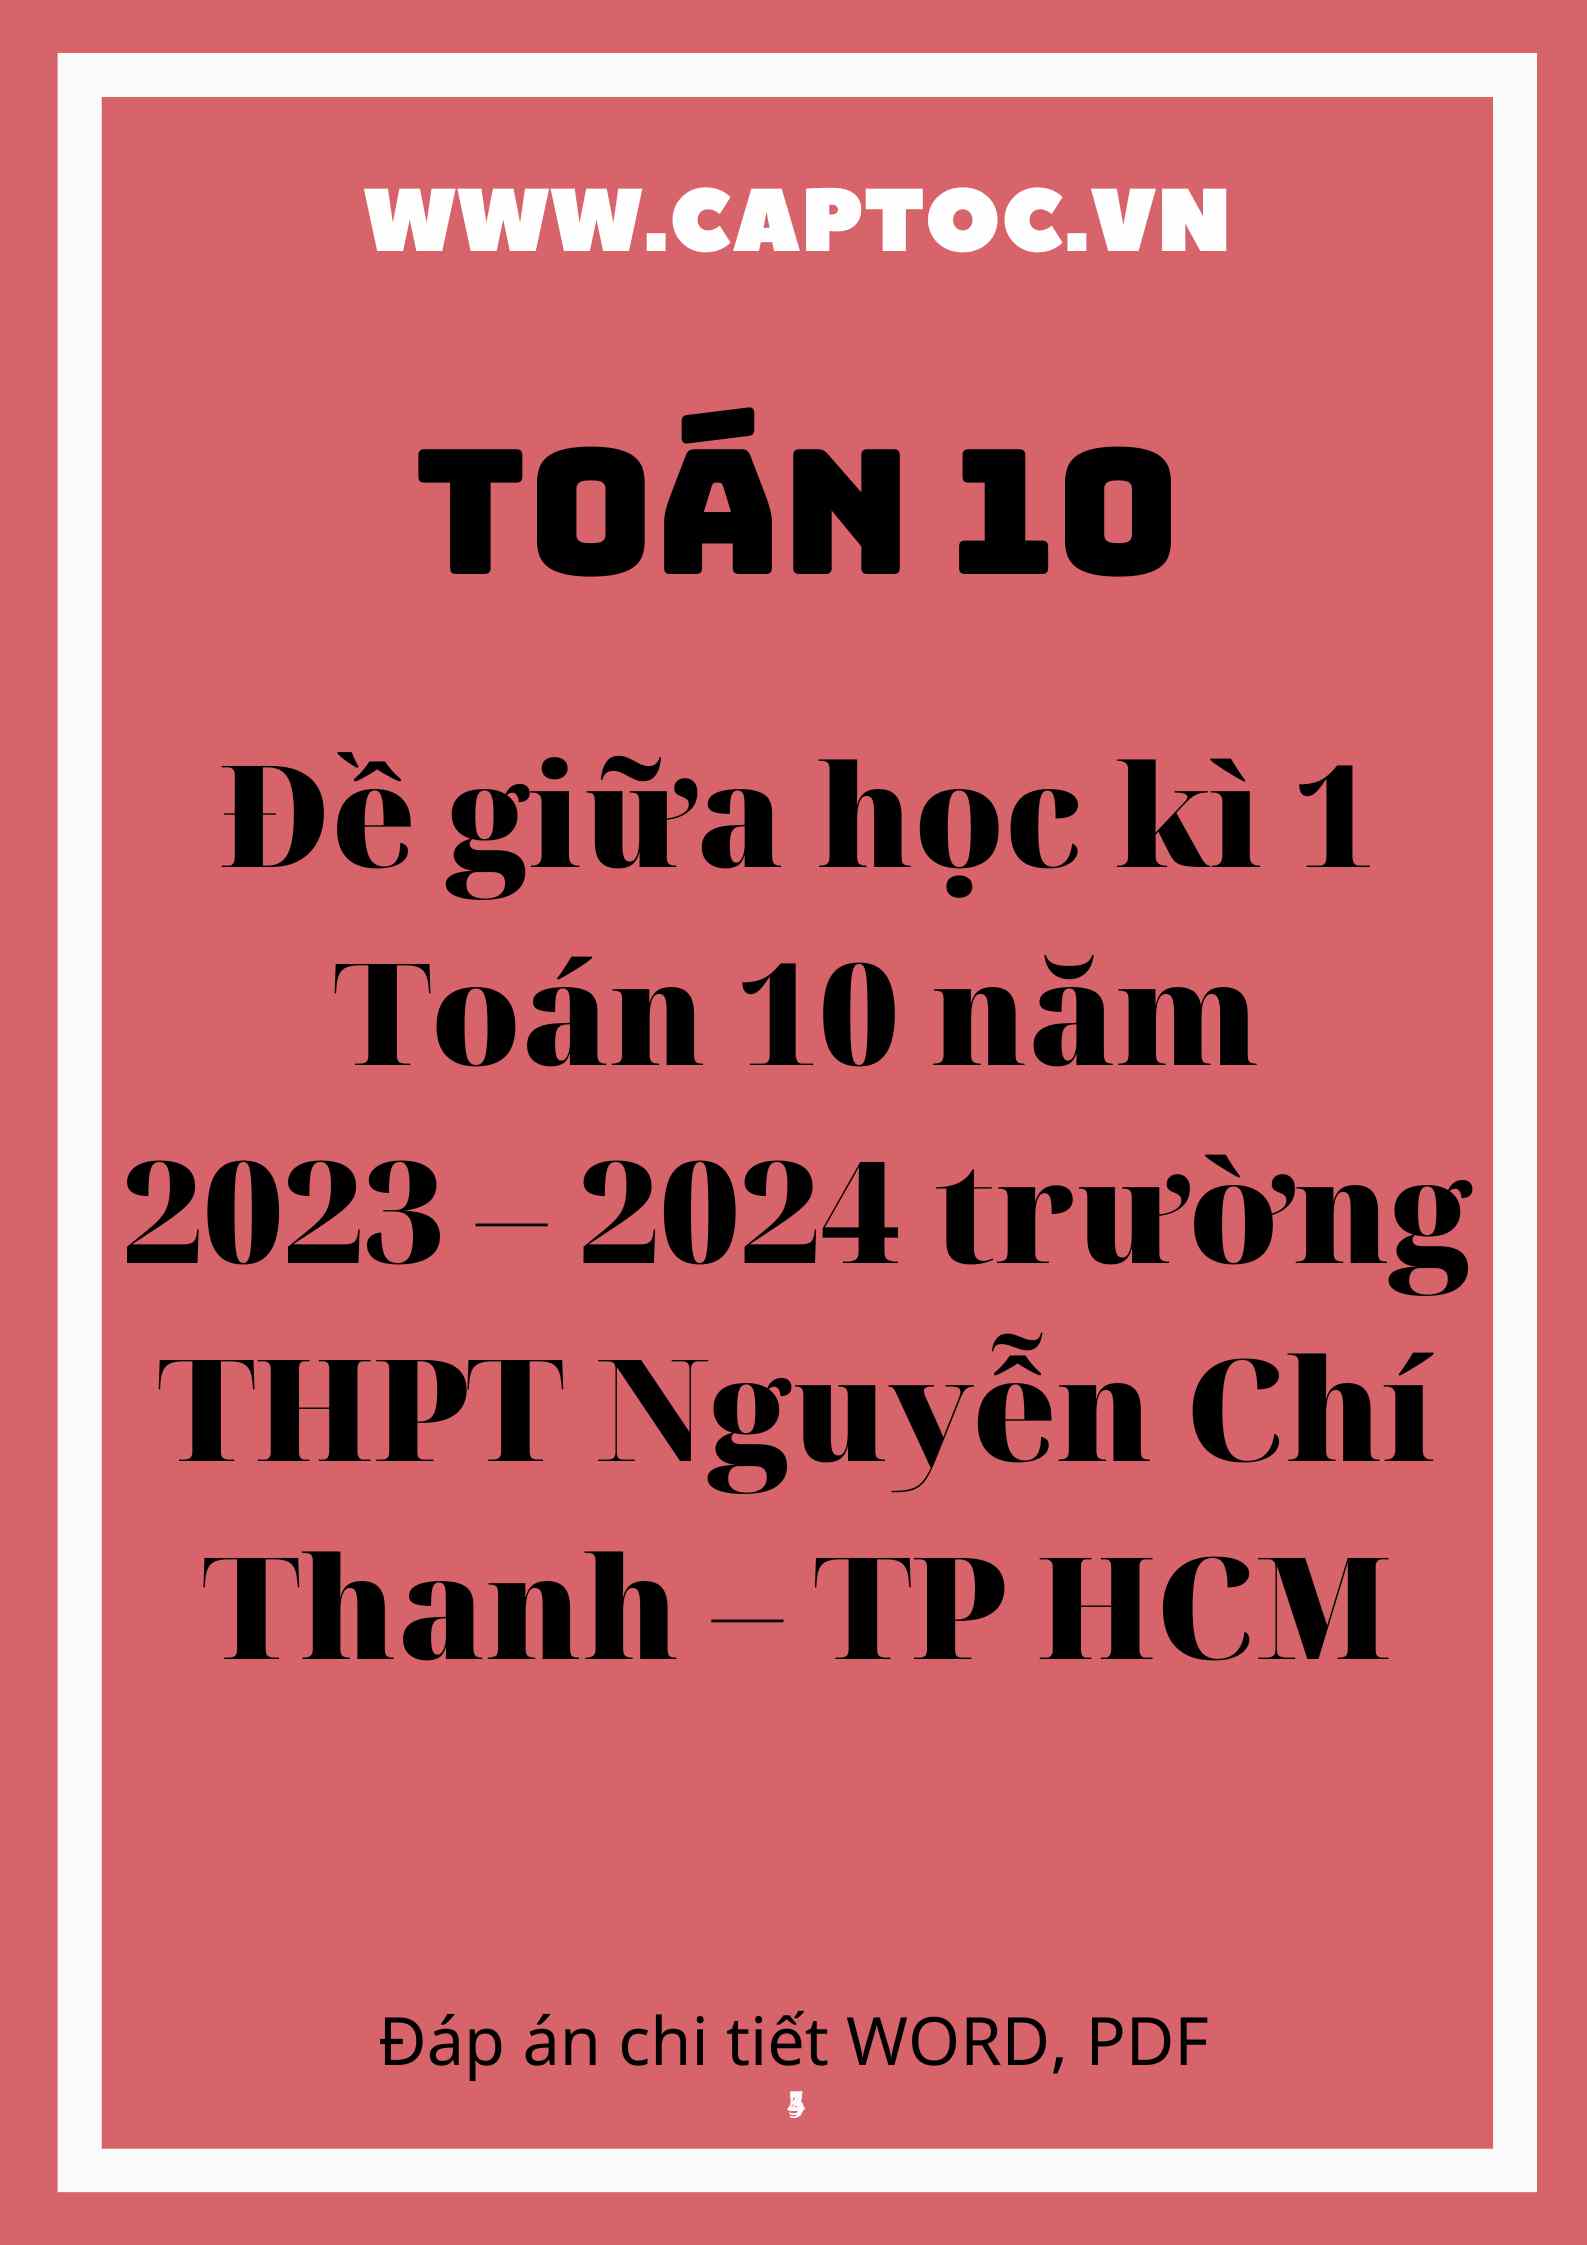 Đề giữa học kì 1 Toán 10 năm 2023 – 2024 trường THPT Nguyễn Chí Thanh – TP HCM